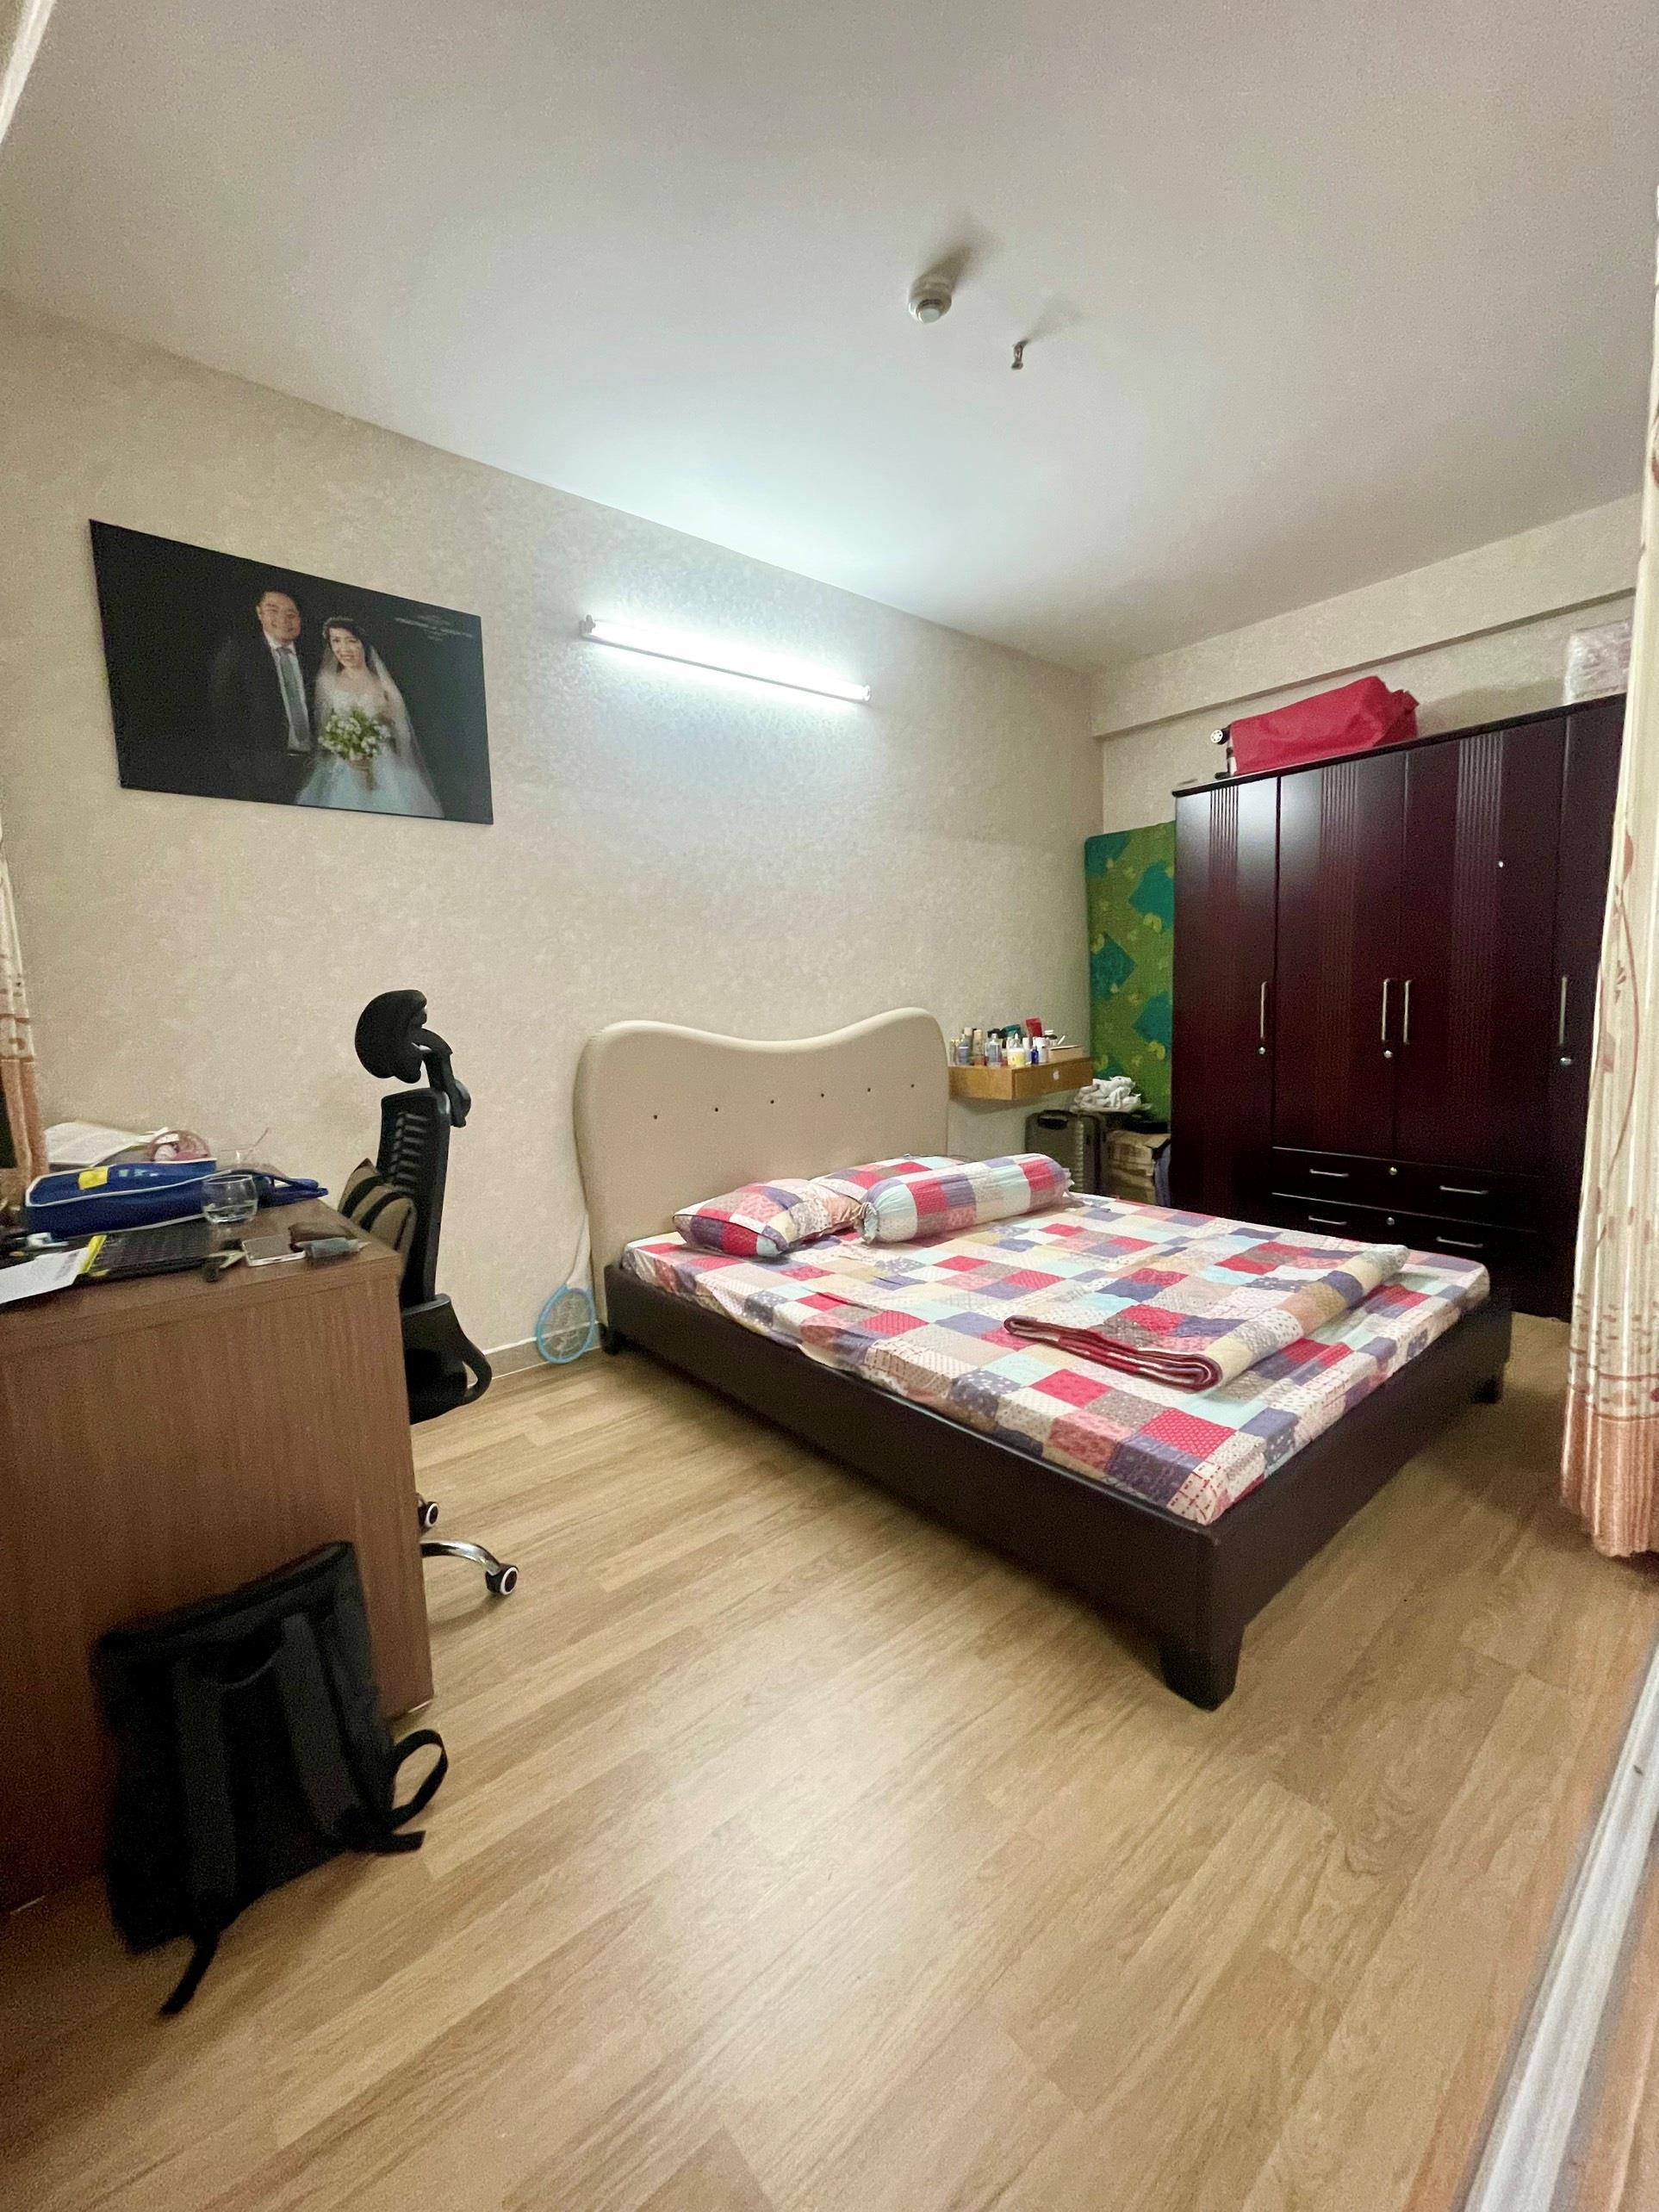 Bán căn hộ quận Bình Tân 1 phòng ngủ giá rẻ 0902399788